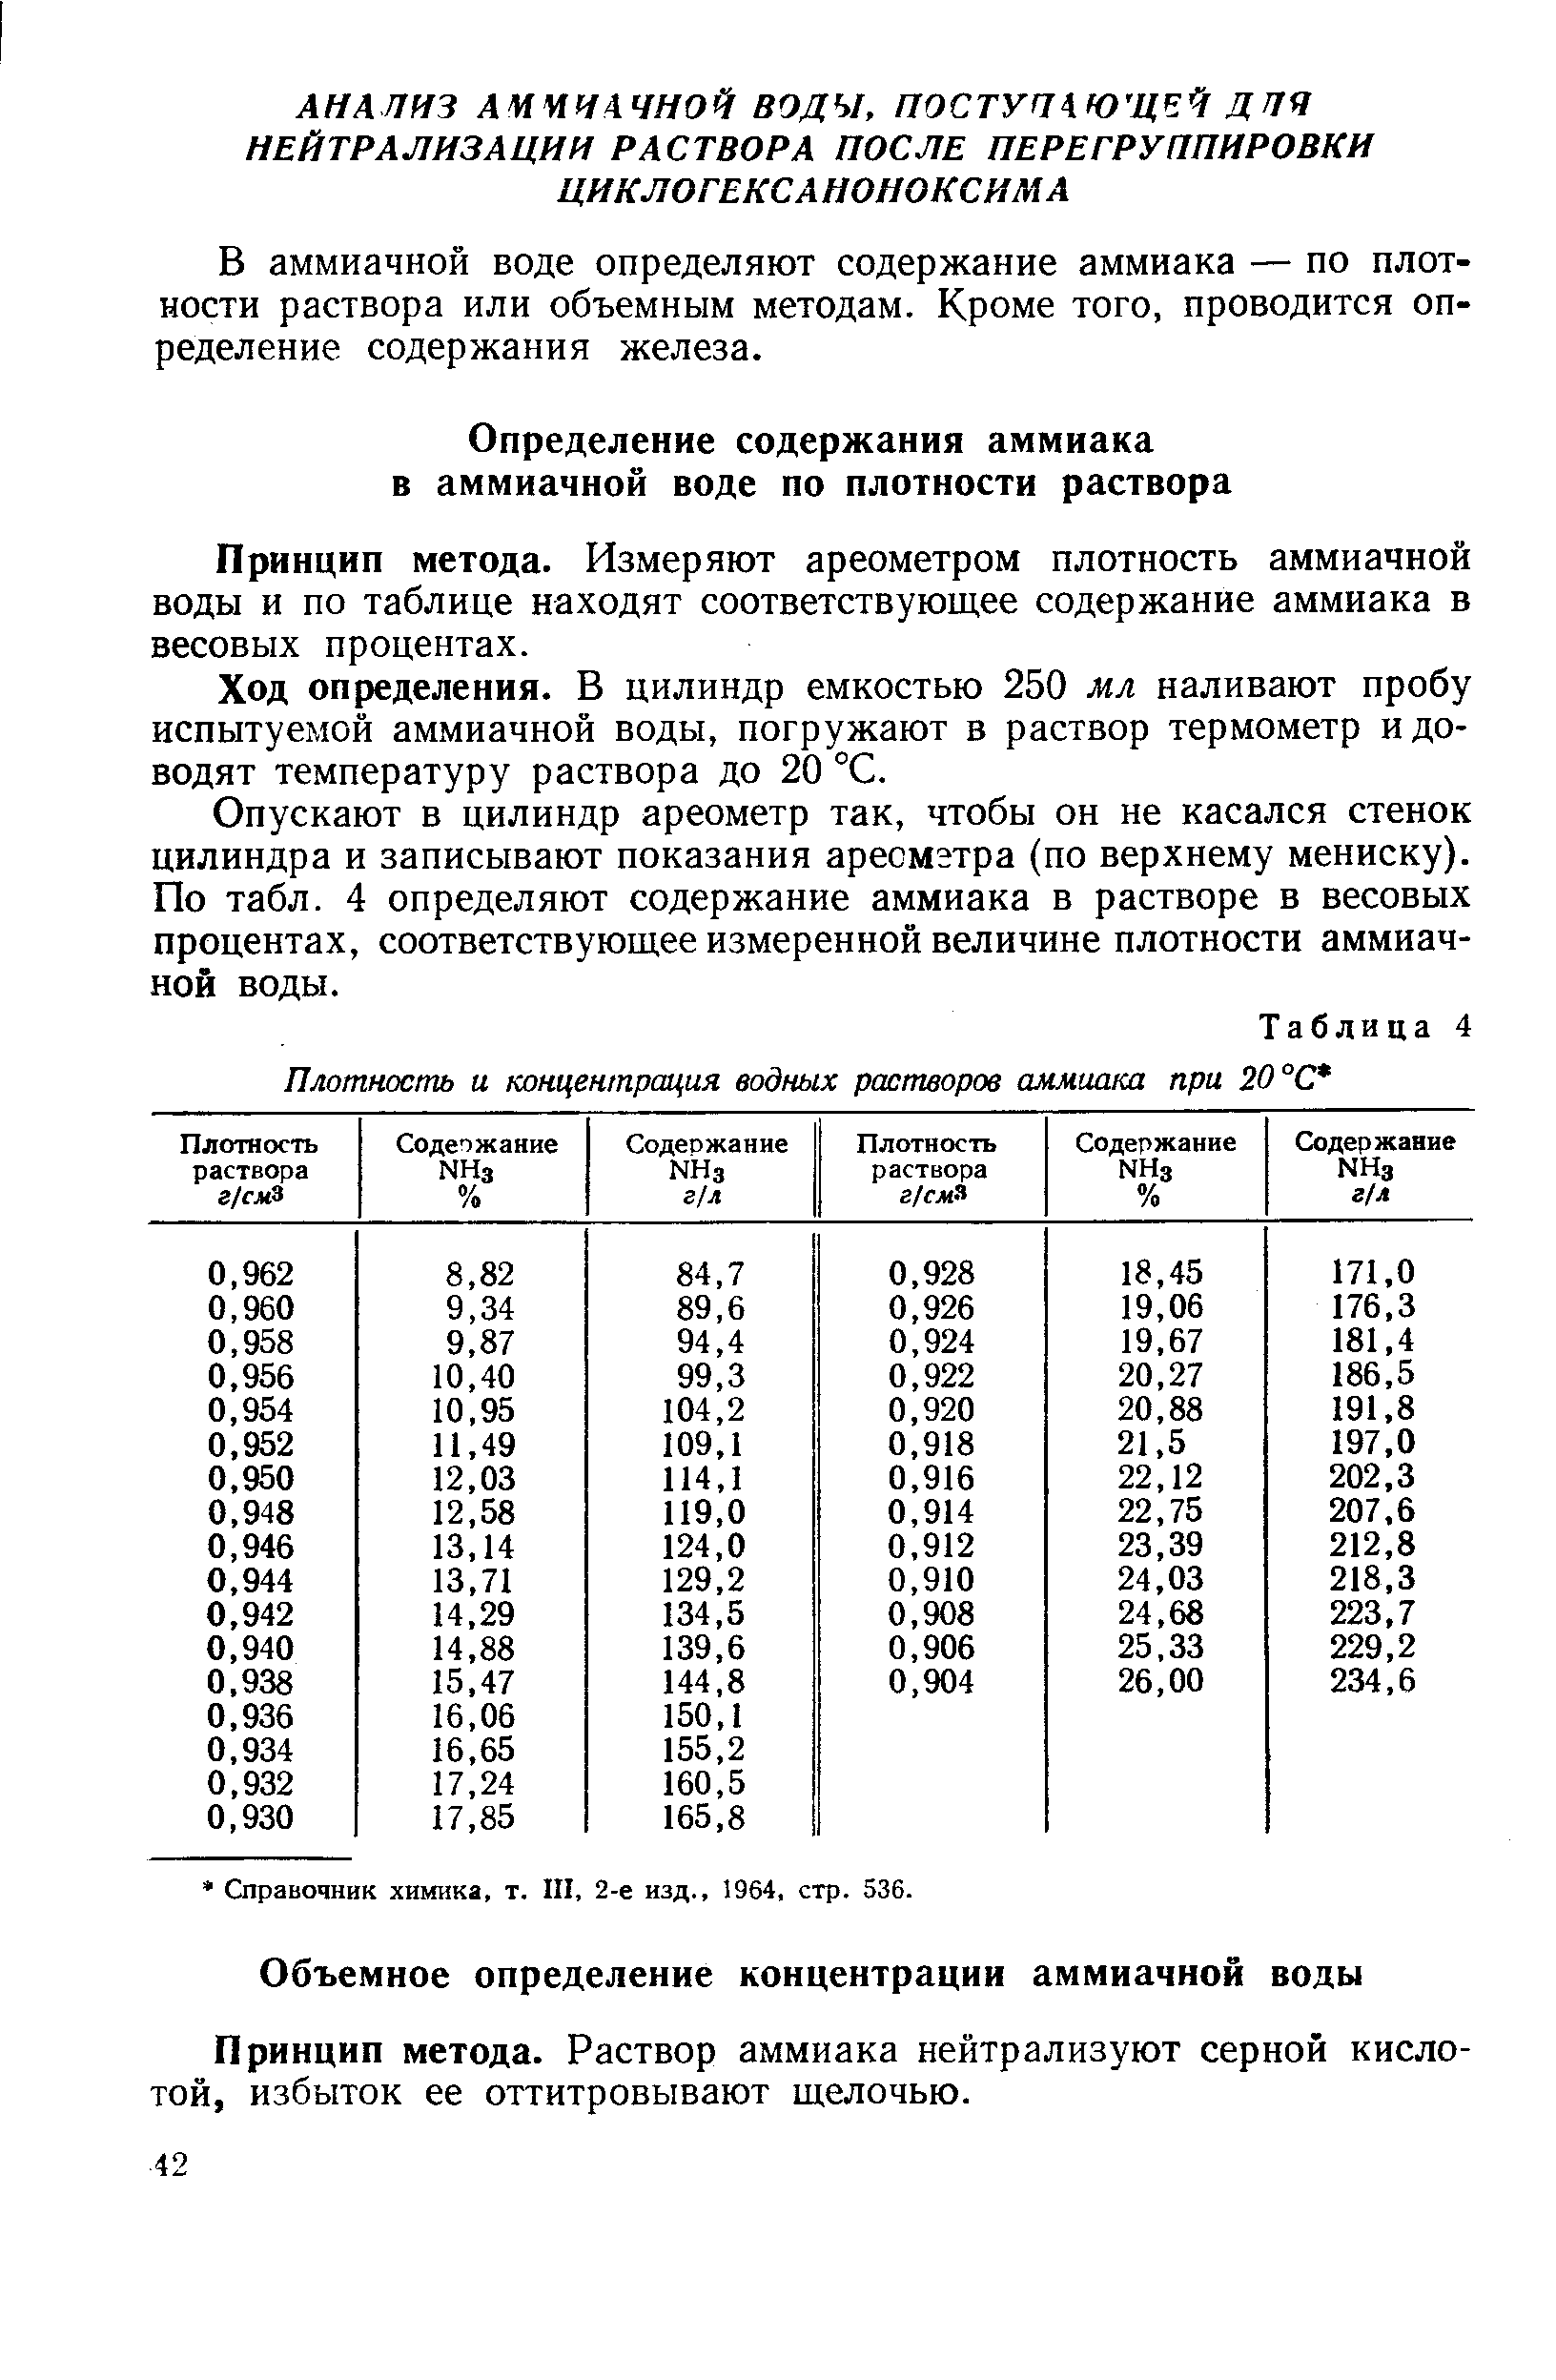 Принцип метода. Измеряют ареометром плотность аммиачной воды и по таблице находят соответствующее содержание аммиака в весовых процентах.